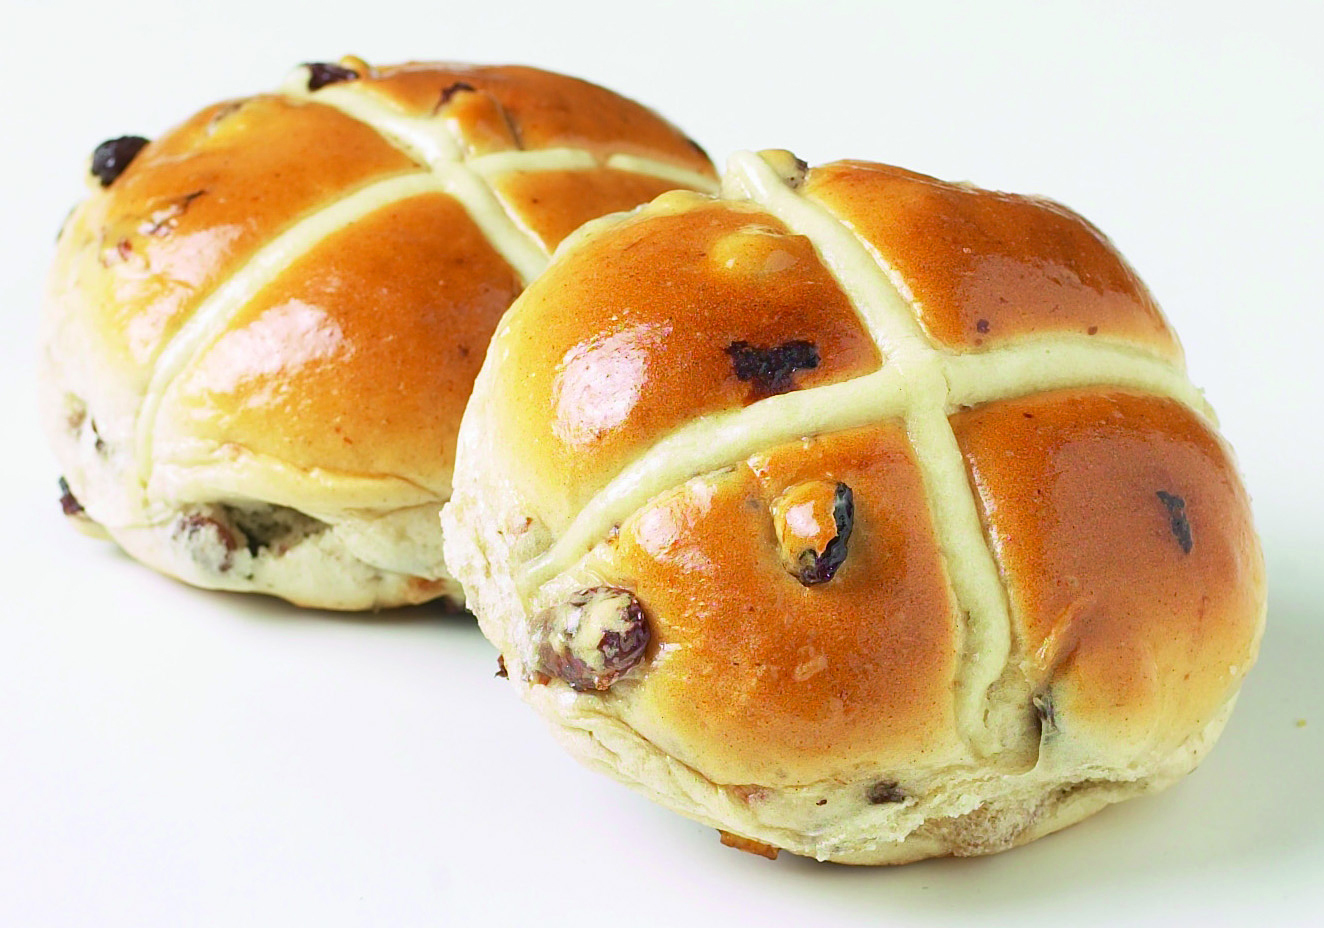 Булочка с изюминкой. Hot Cross buns в Великобритании. Hot Cross buns булочки. Английские пасхальные крестовые булочки. Пасхальные крестовые булочки.